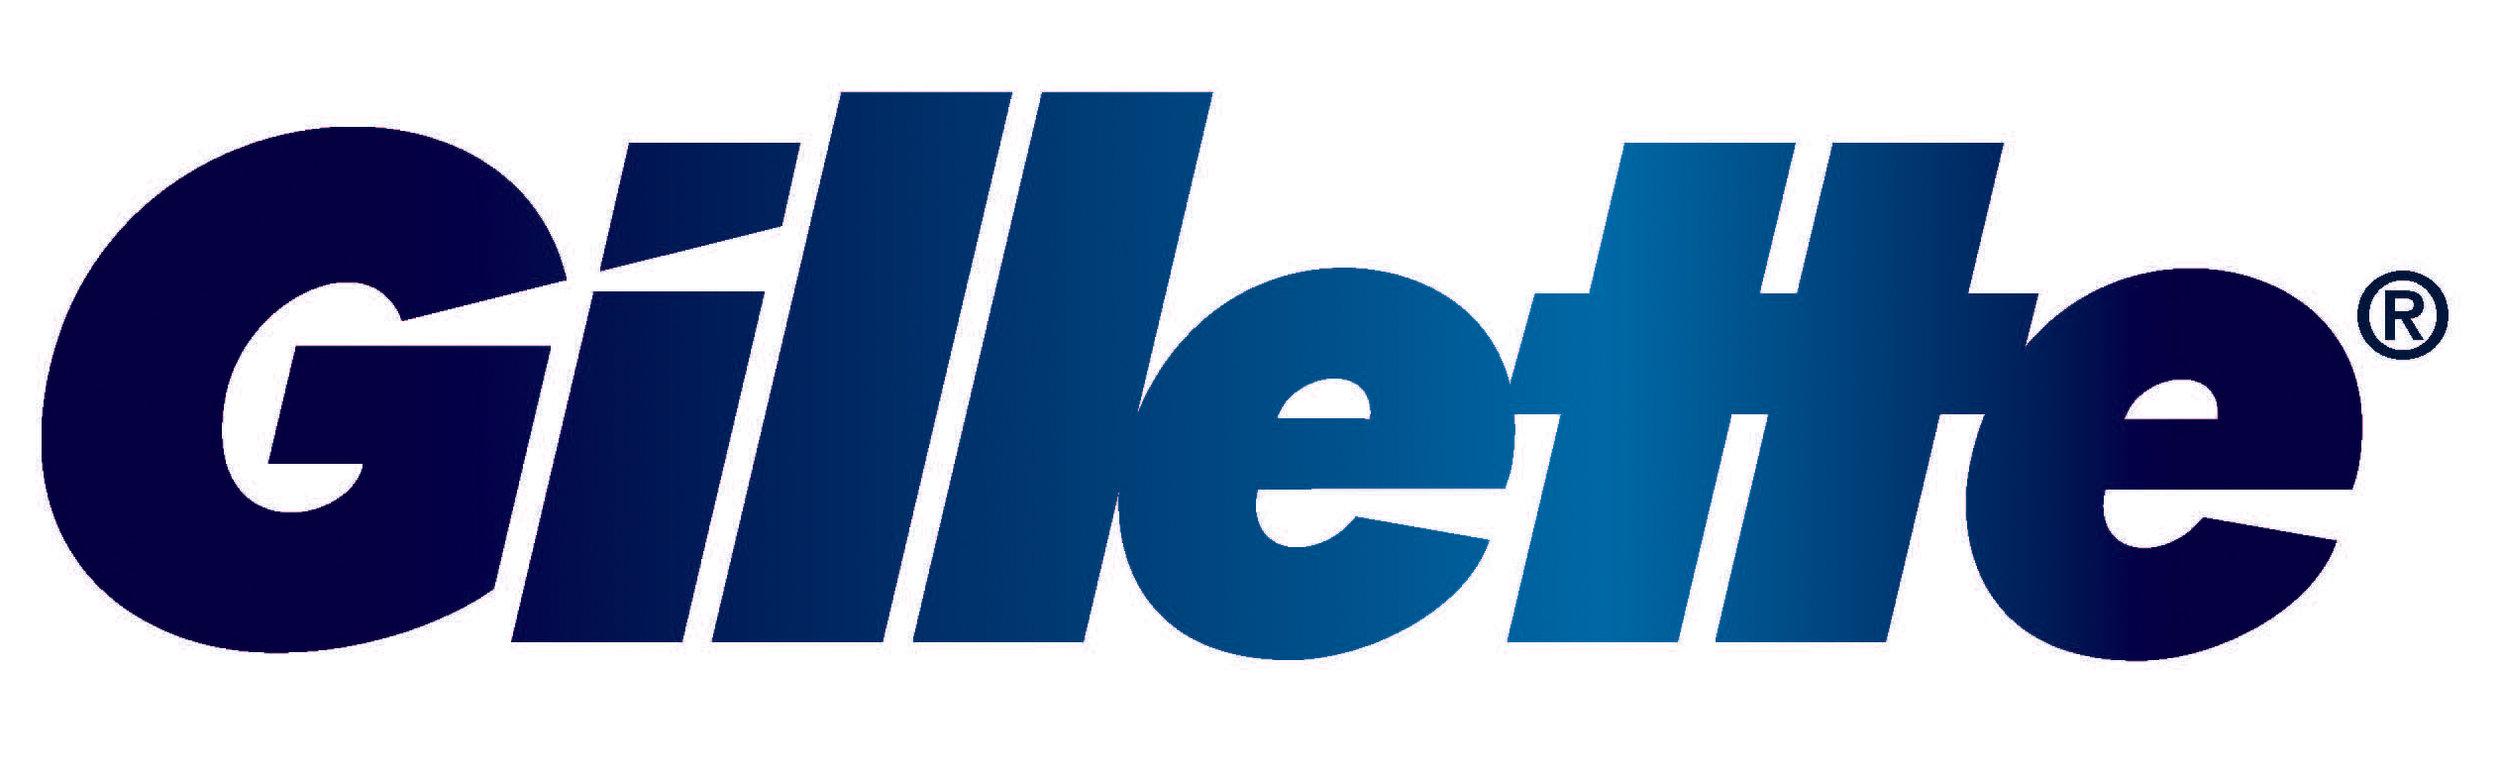 Gillette-logo1.jpg